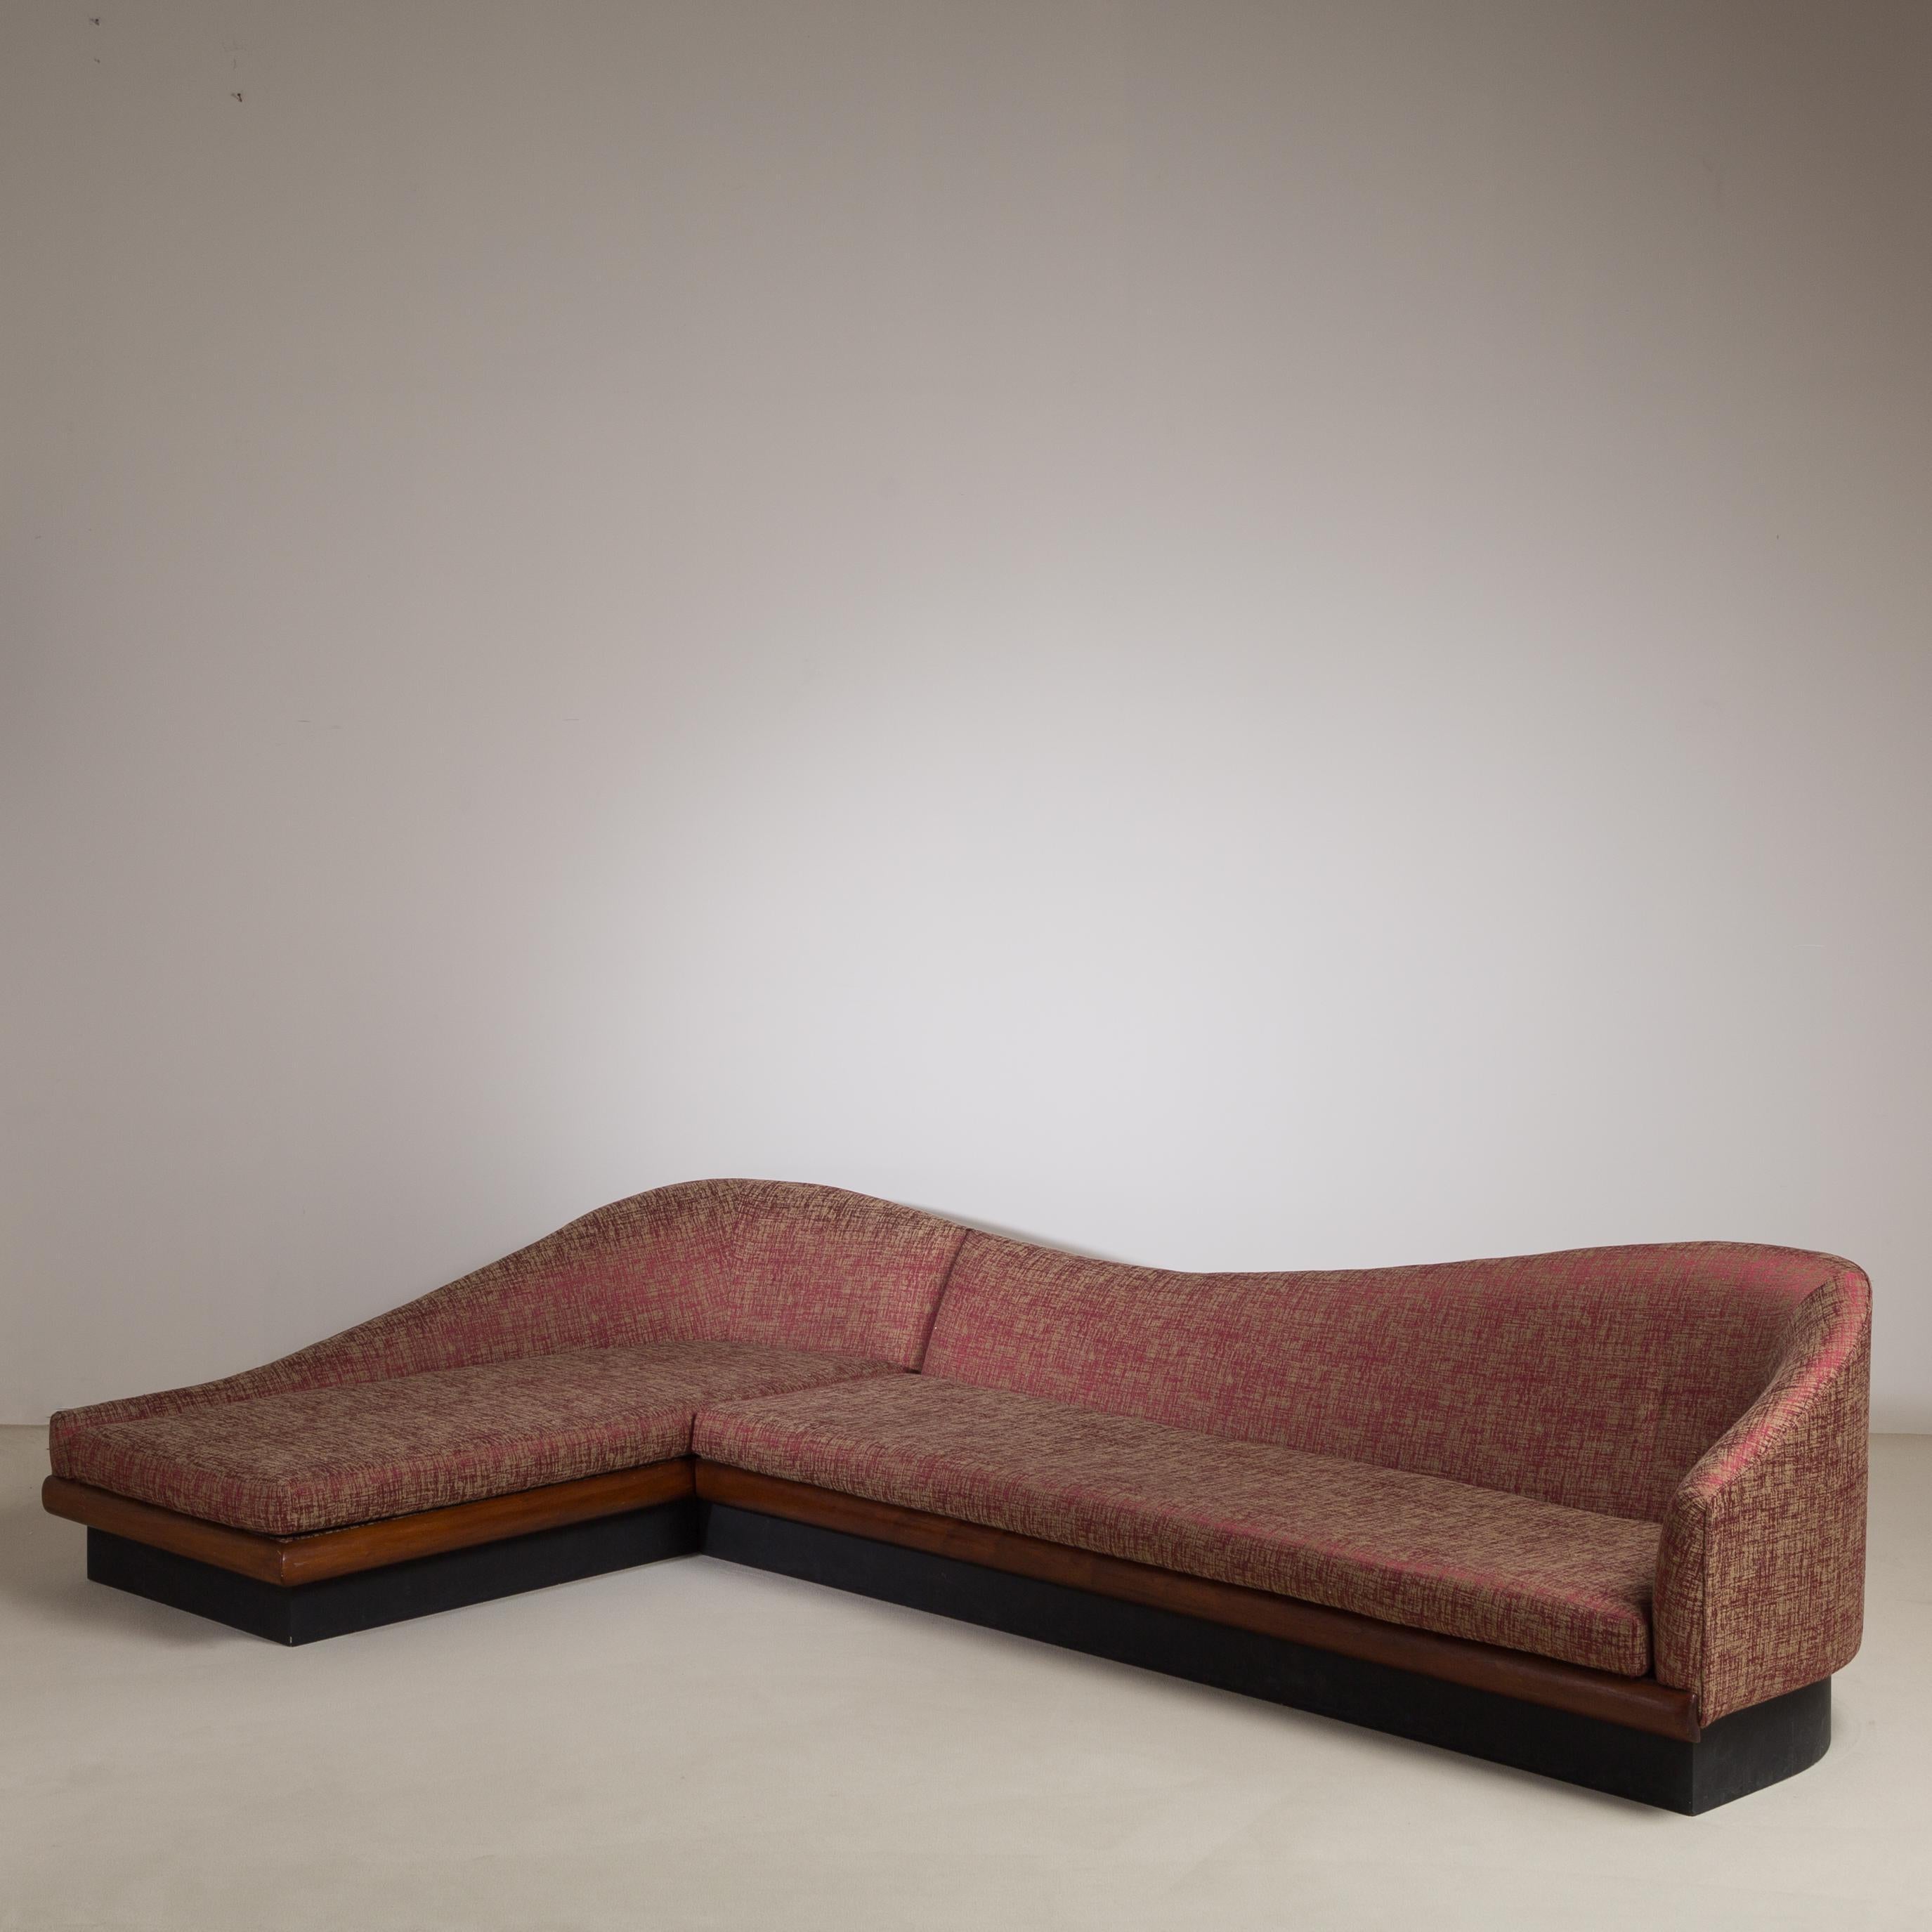 Geschwungenes zweiteiliges Cloud-Sofa von Adrian Pearsall für Craft Associates, USA, 1950er Jahre. Auf einem schwimmenden Sockel aus Nussbaumholz. In gutem Vintage-Zustand mit neuer Polsterung.   Bitte kontaktieren Sie uns, wenn Sie daran